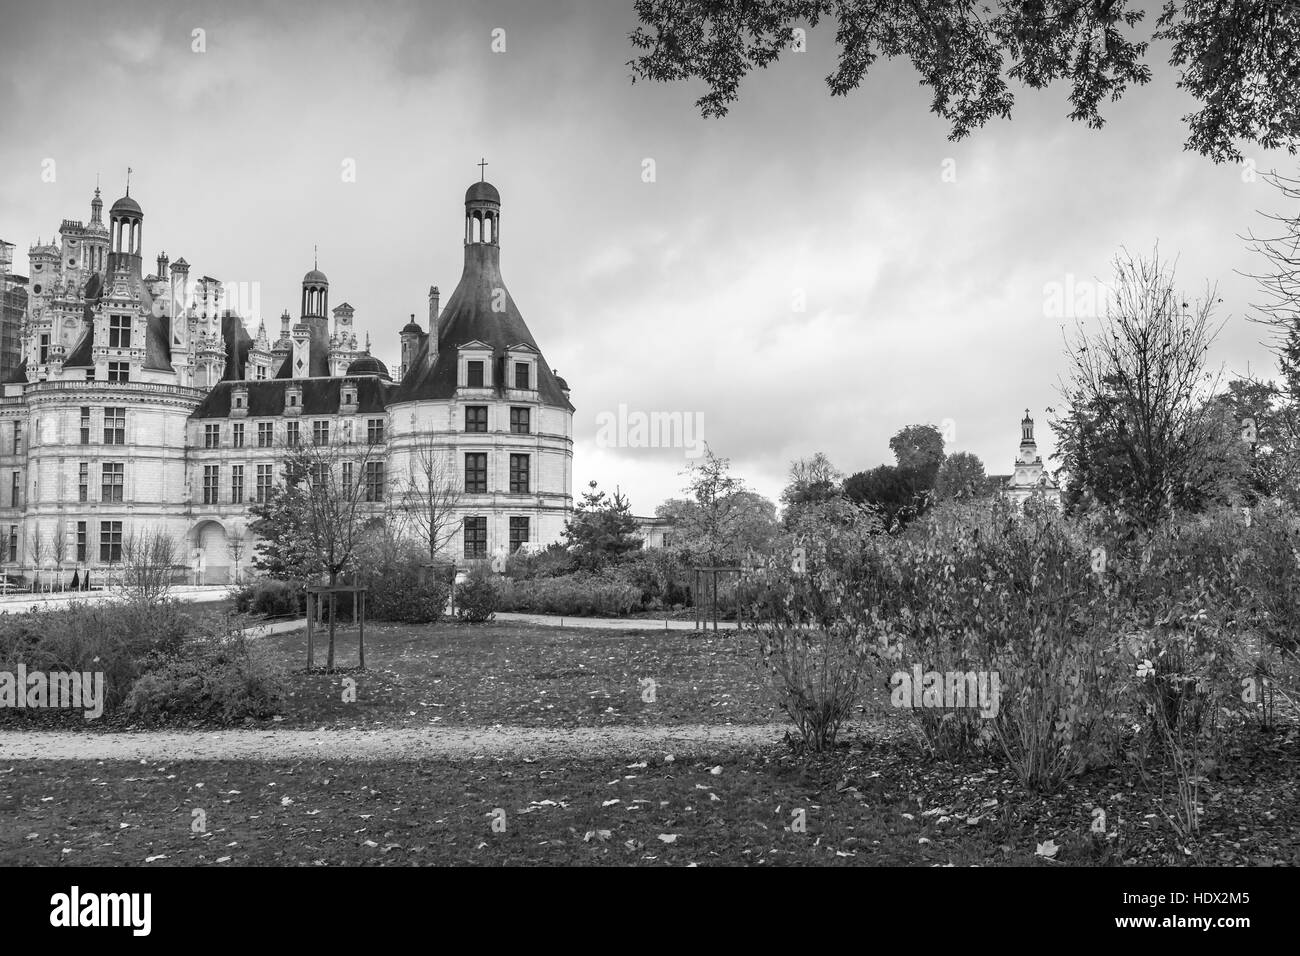 Chambord, France - le 6 novembre 2016 : Château de Chambord, château médiéval, vallée de la Loire. L'architecture de la Renaissance française Banque D'Images